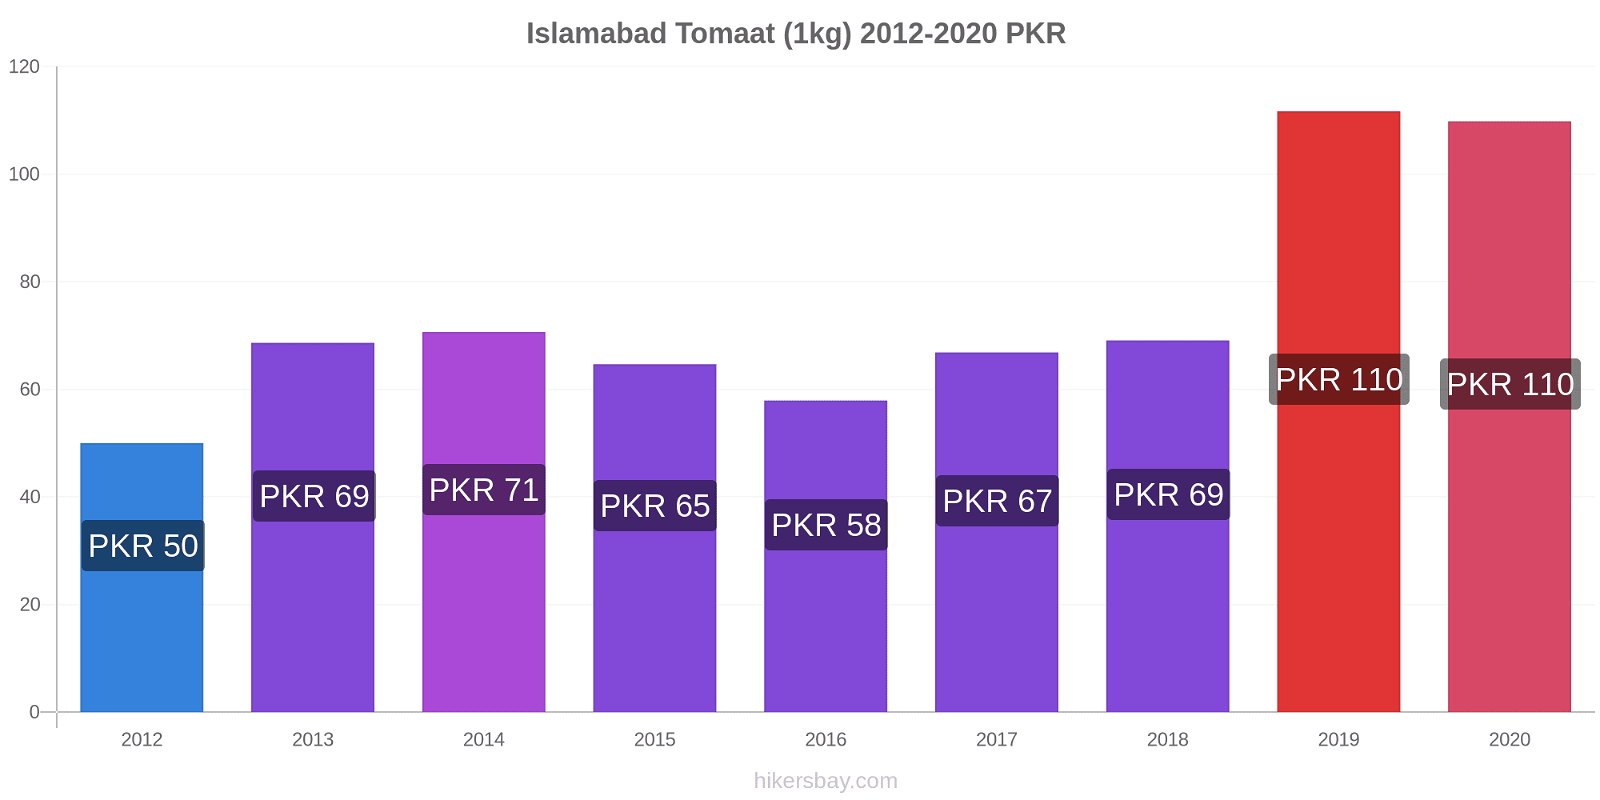 Islamabad prijswijzigingen Tomaat (1kg) hikersbay.com